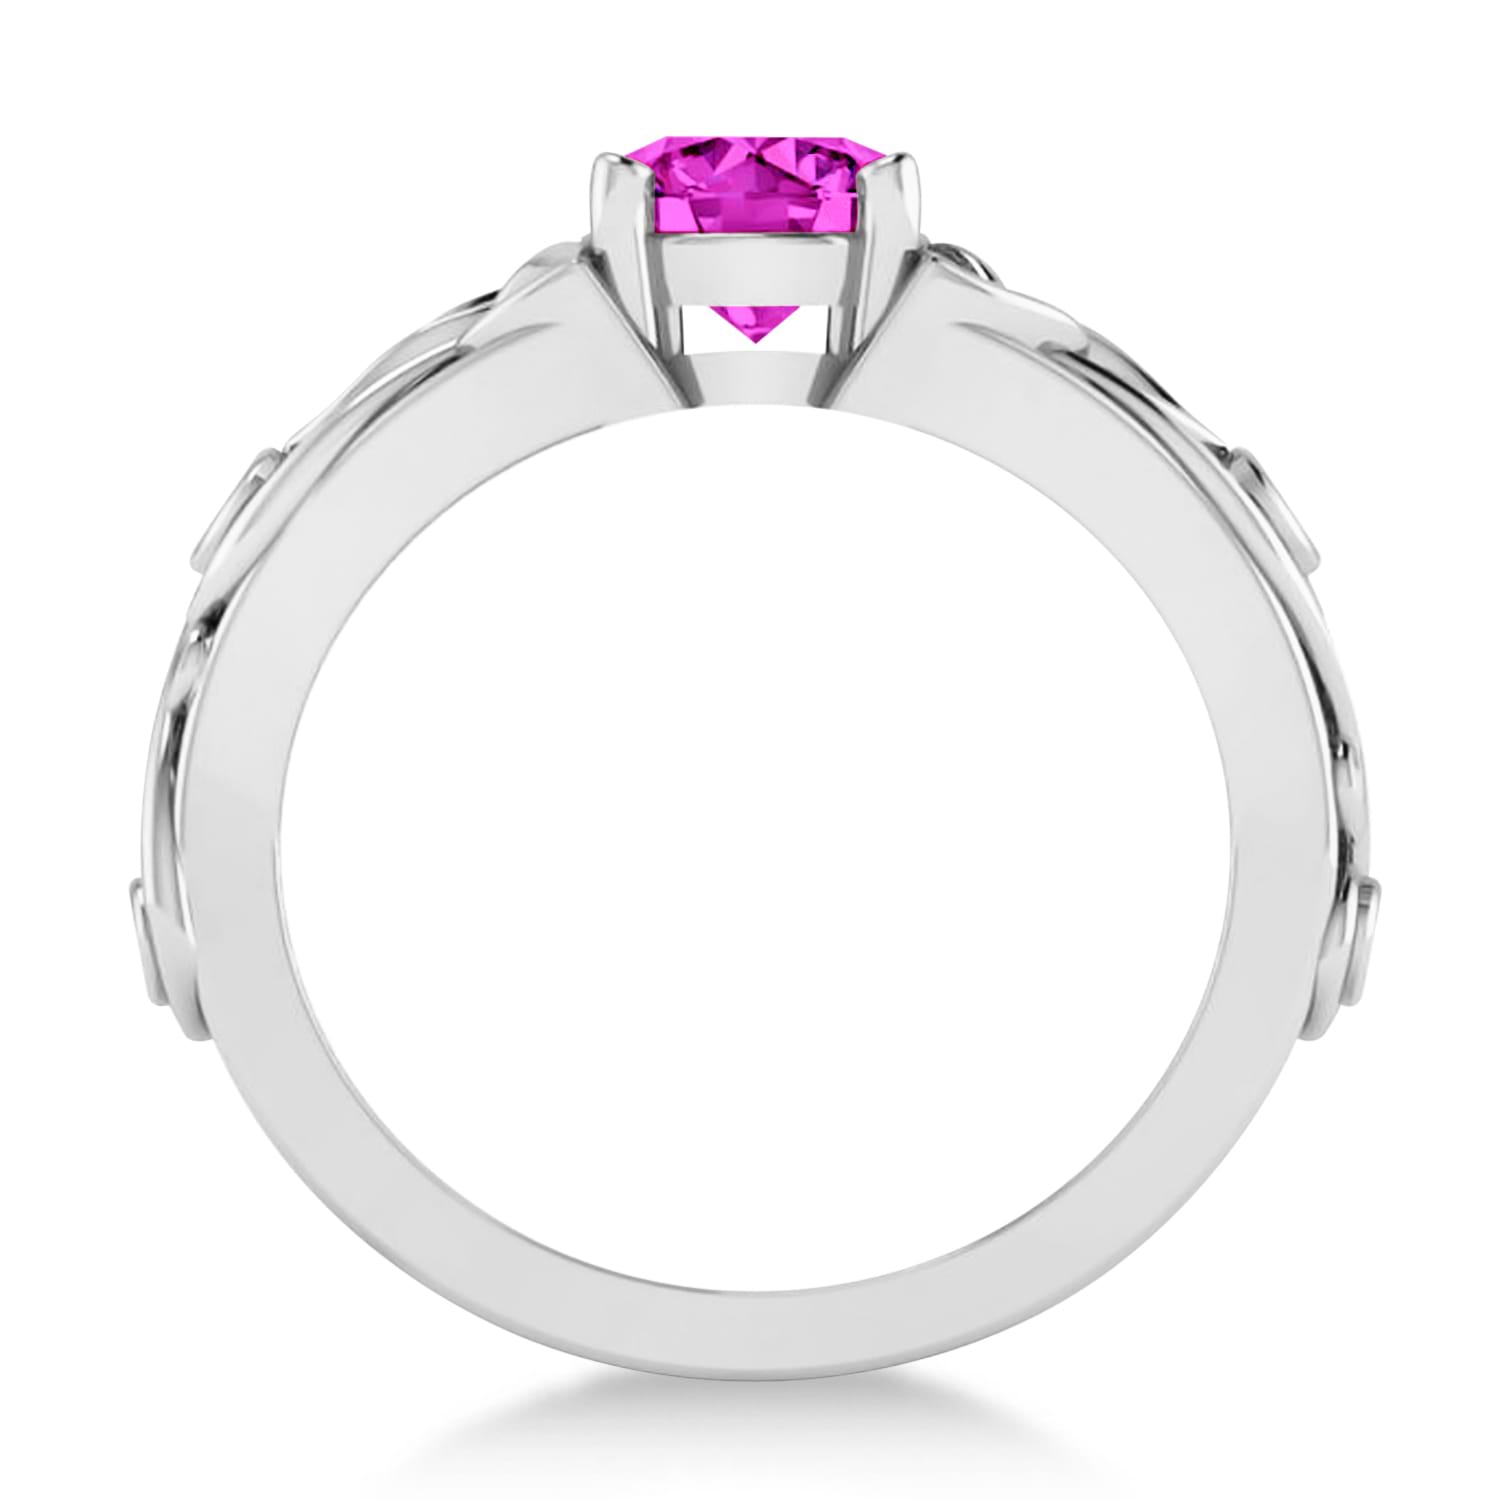 Diamond & Pink Topaz Celtic Engagement Ring 14k White Gold (1.06ct)